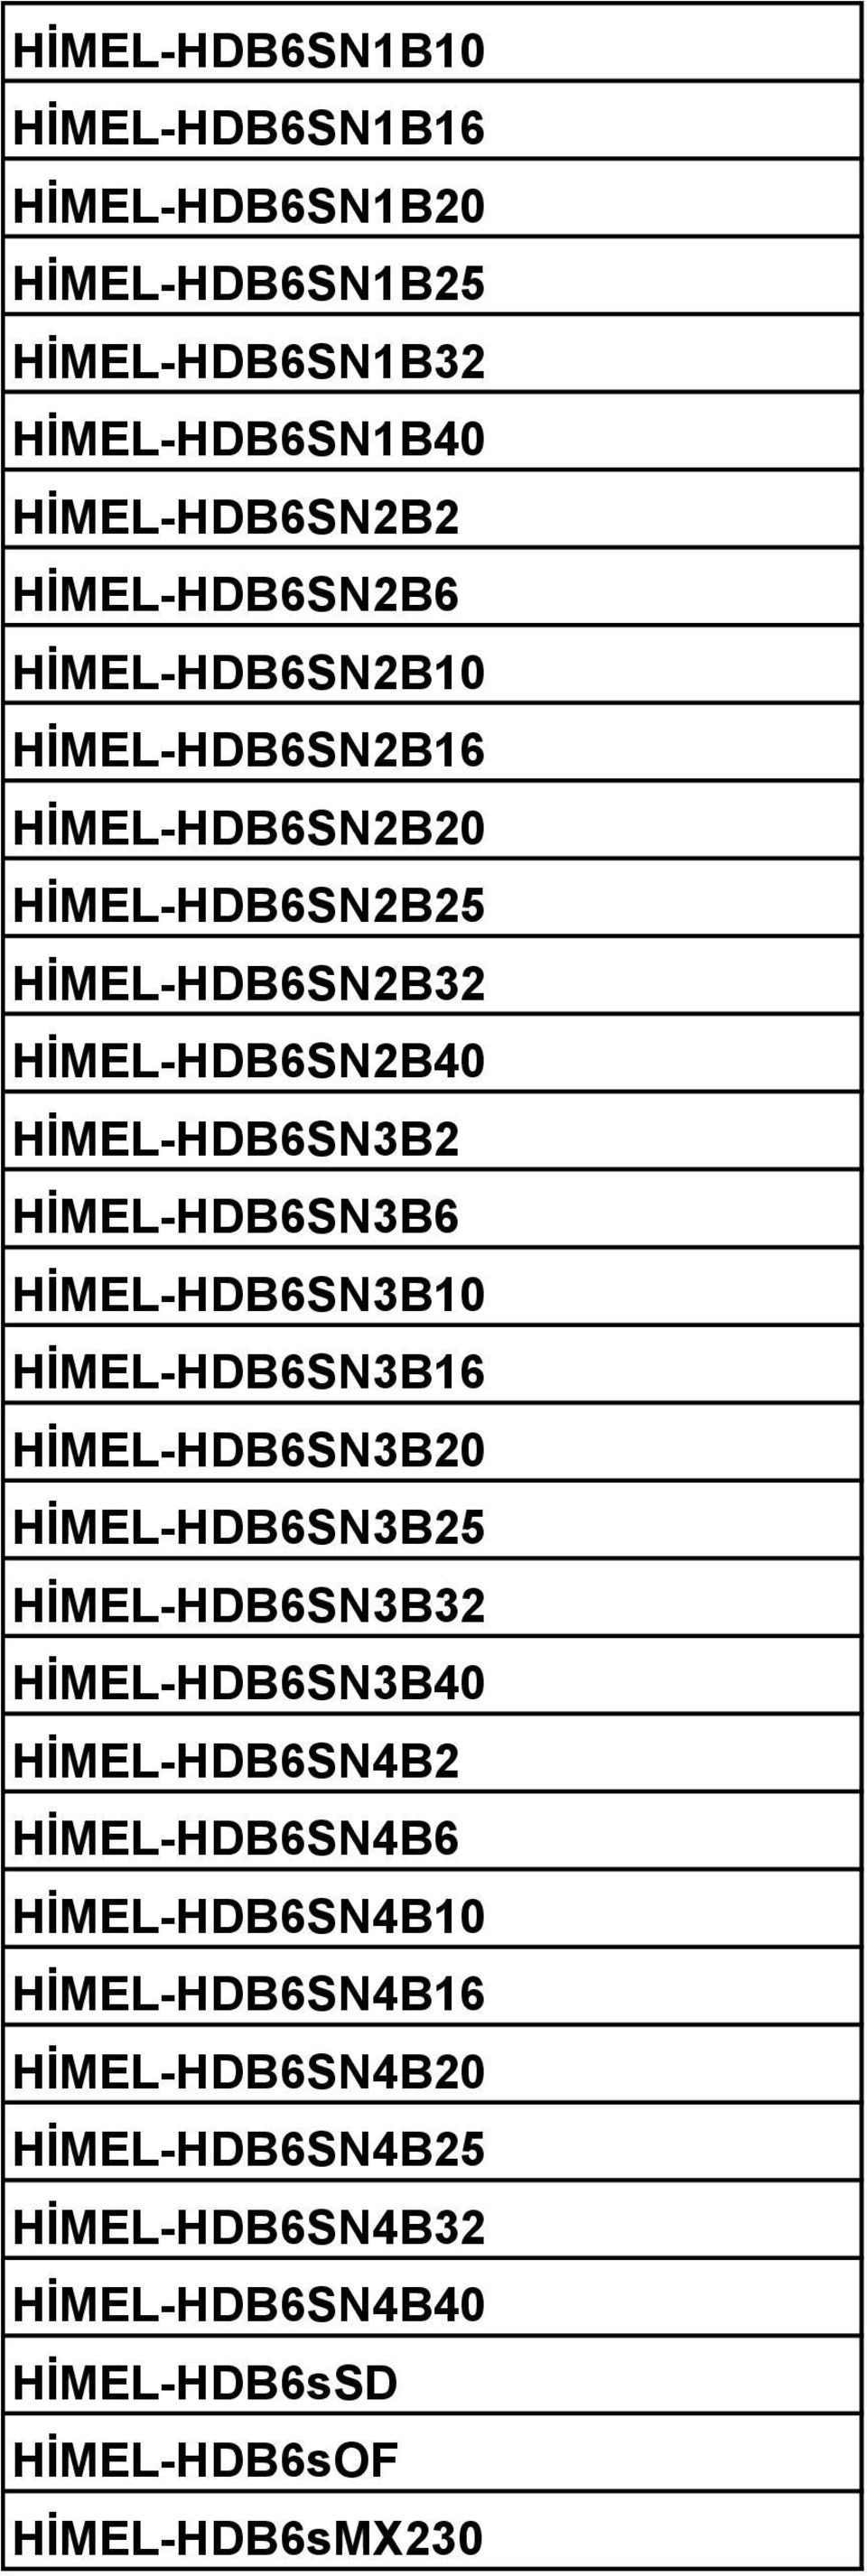 HİMEL-HDB6SN3B10 HİMEL-HDB6SN3B16 HİMEL-HDB6SN3B20 HİMEL-HDB6SN3B25 HİMEL-HDB6SN3B32 HİMEL-HDB6SN3B40 HİMEL-HDB6SN4B2 HİMEL-HDB6SN4B6